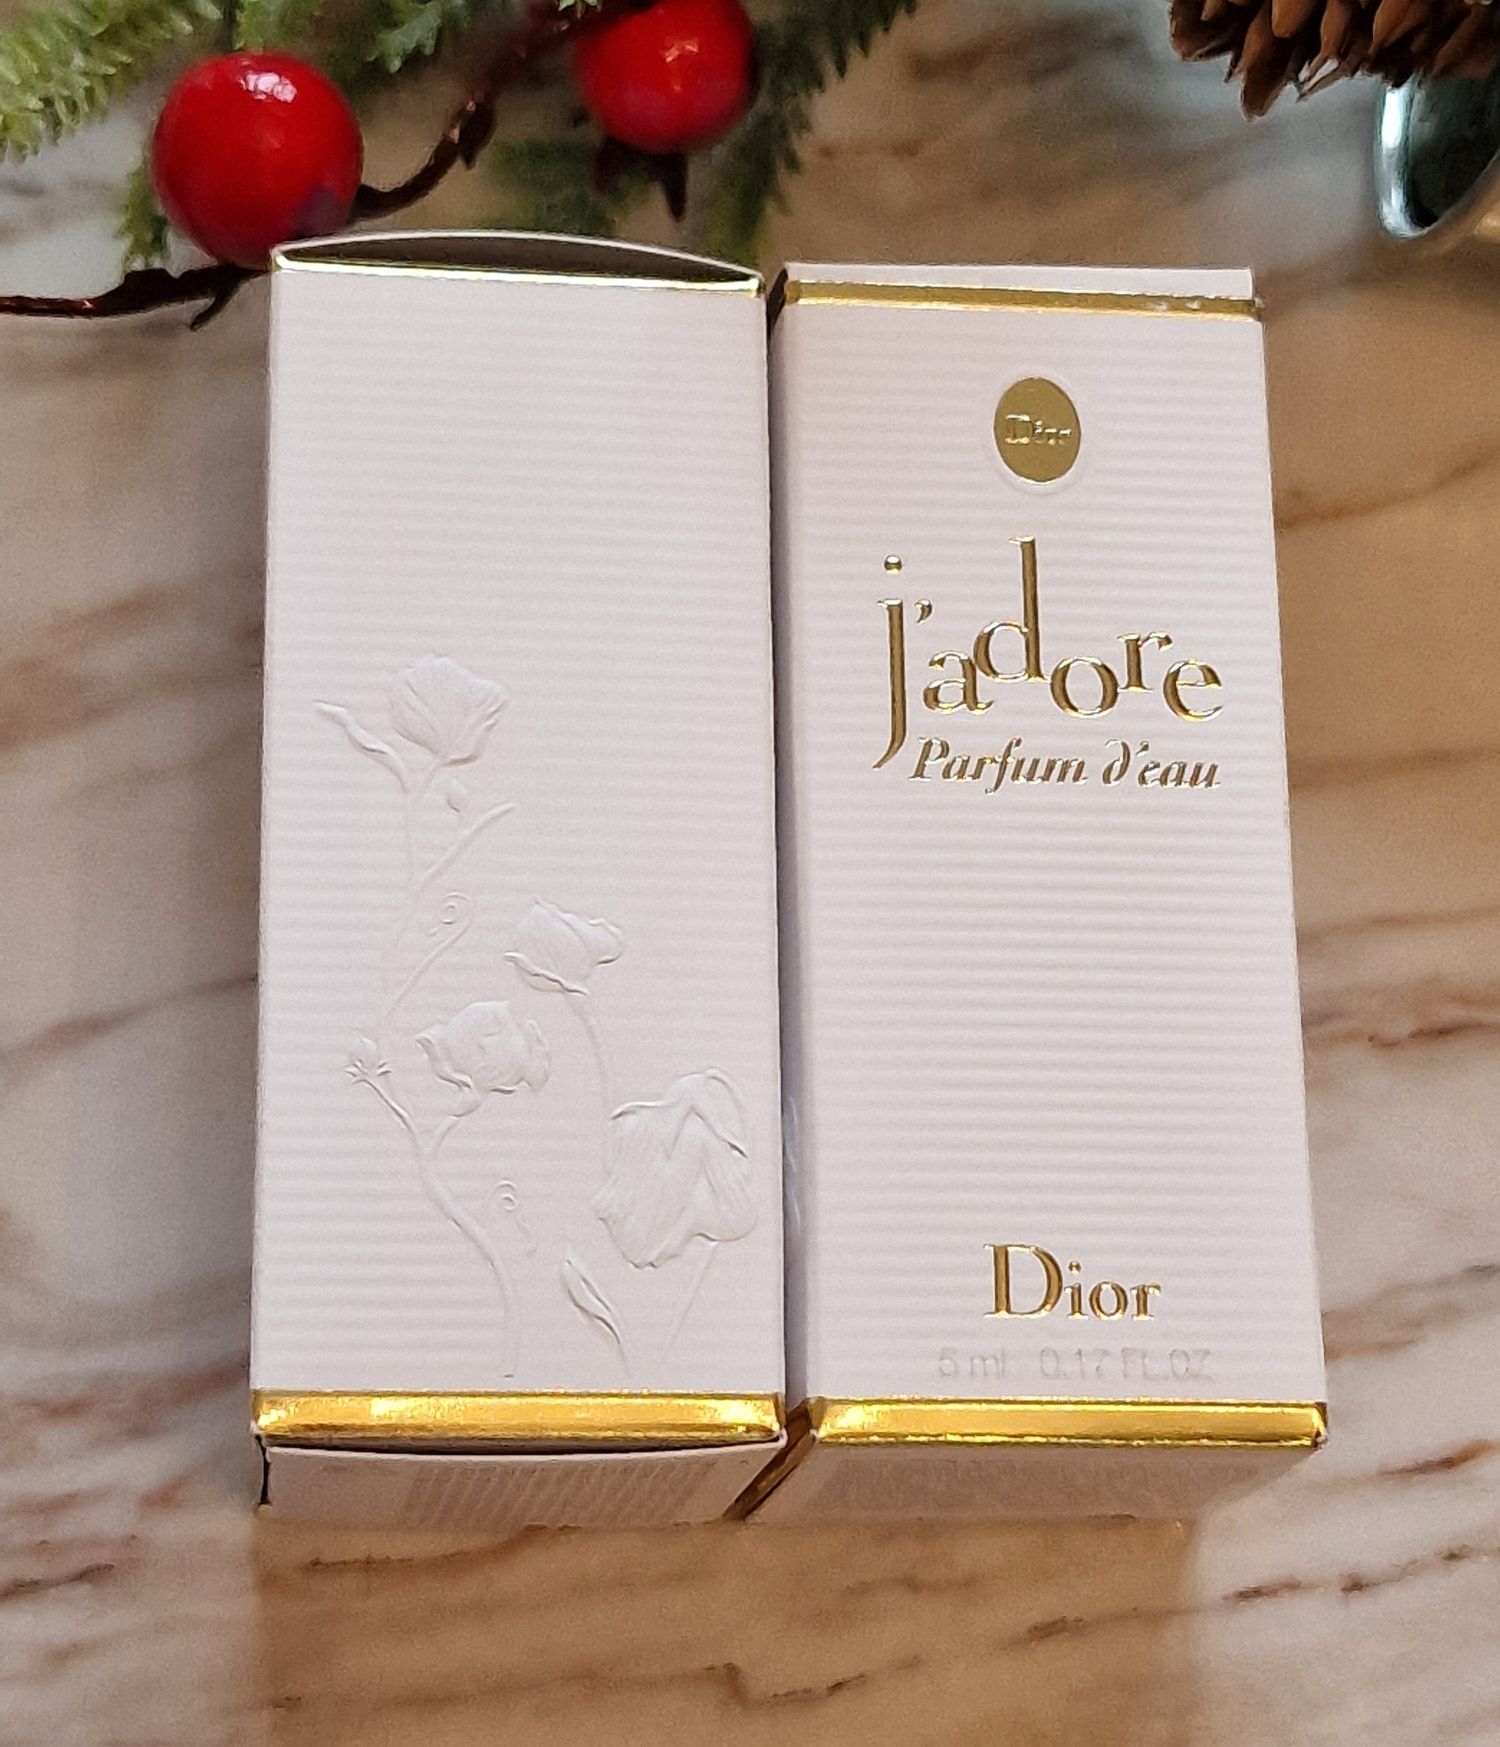 Dior Jadore Parfum d'eau 5 ml miniaturka